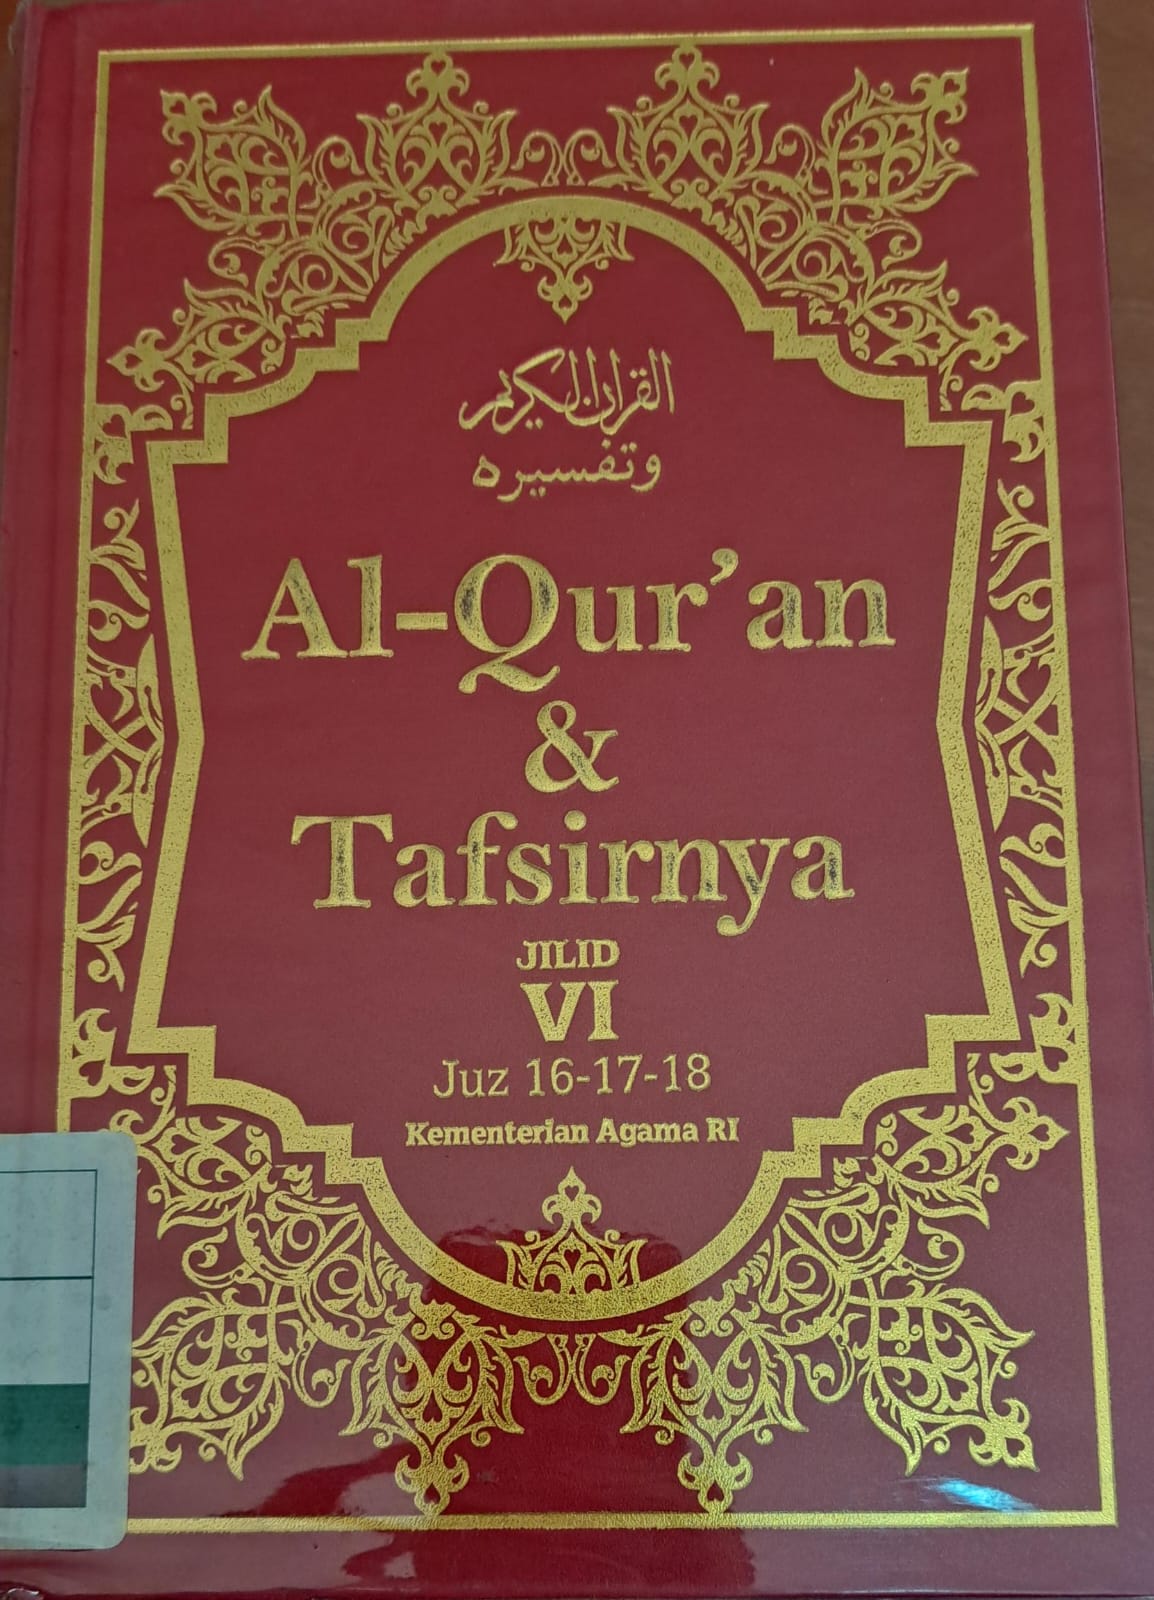 Al-qur'an & tafsirnya jilid VI :  Juz 16-17-18